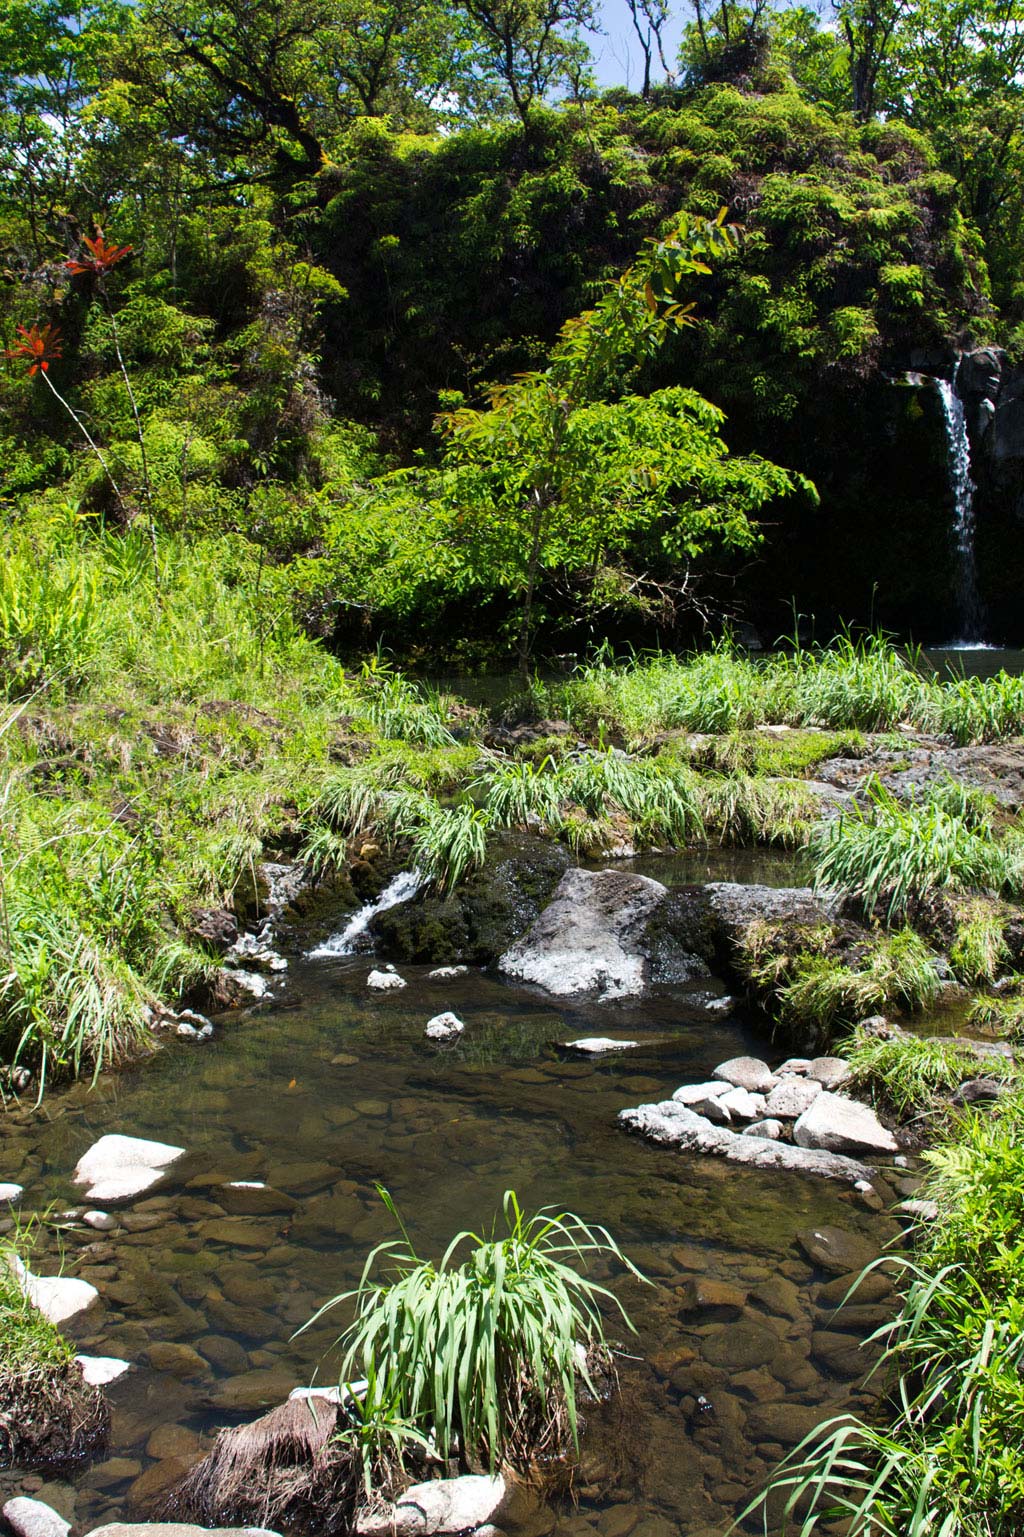 Maui Hawaii – Puaa Kaa Fall Wasserfall an der Road to Hana | SOMEWHERE ELSE